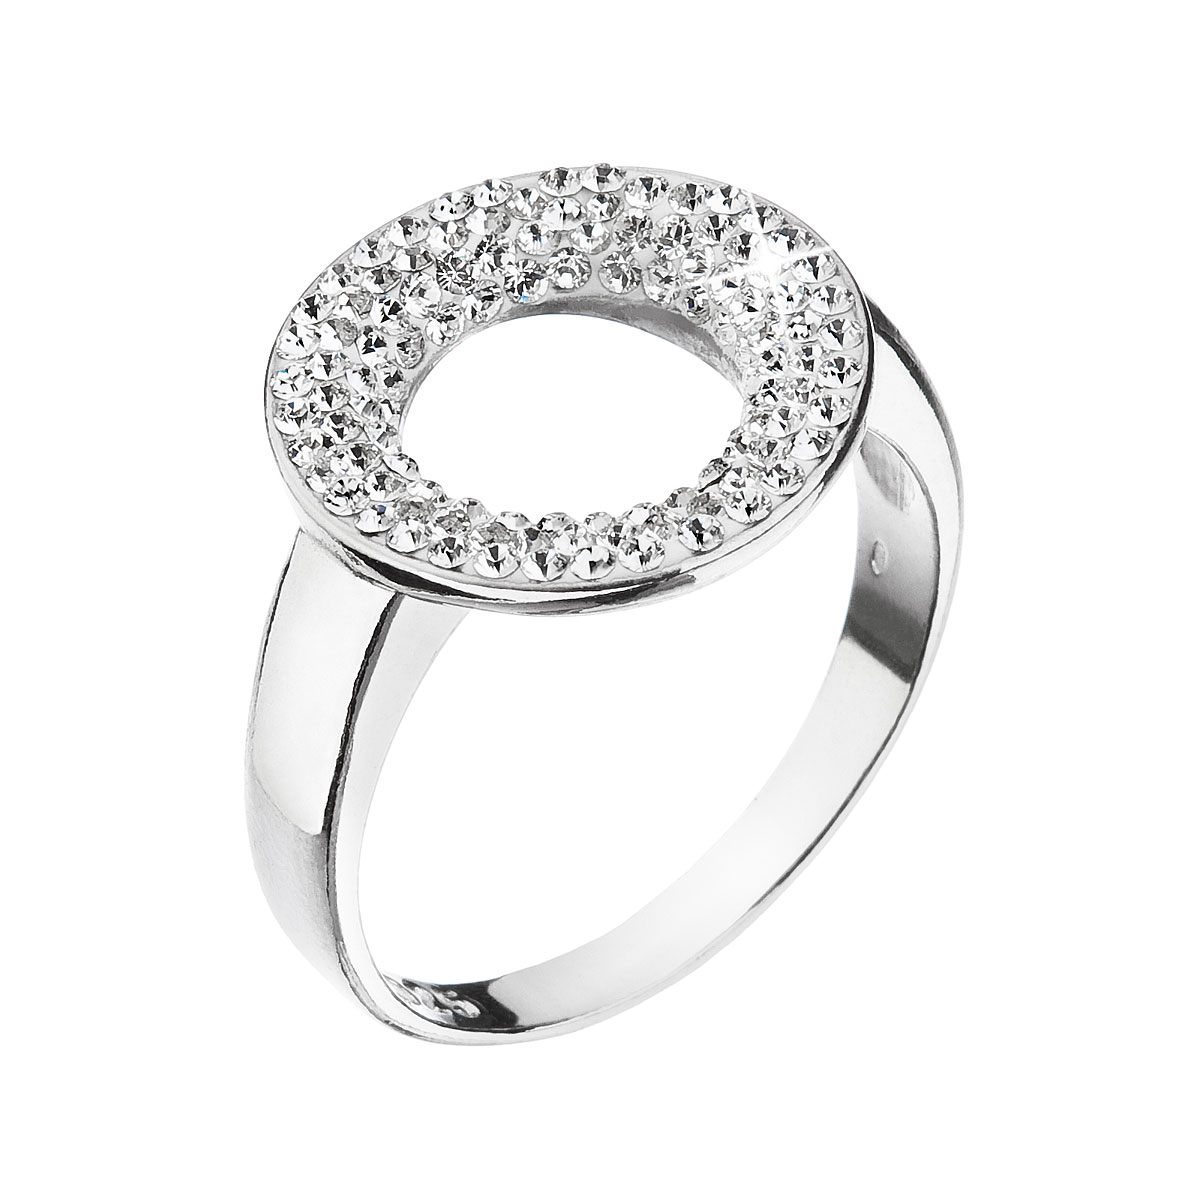 Evolution Group Stříbrný prsten s krystaly Swarovski bílý kruh 35058.1 krystal